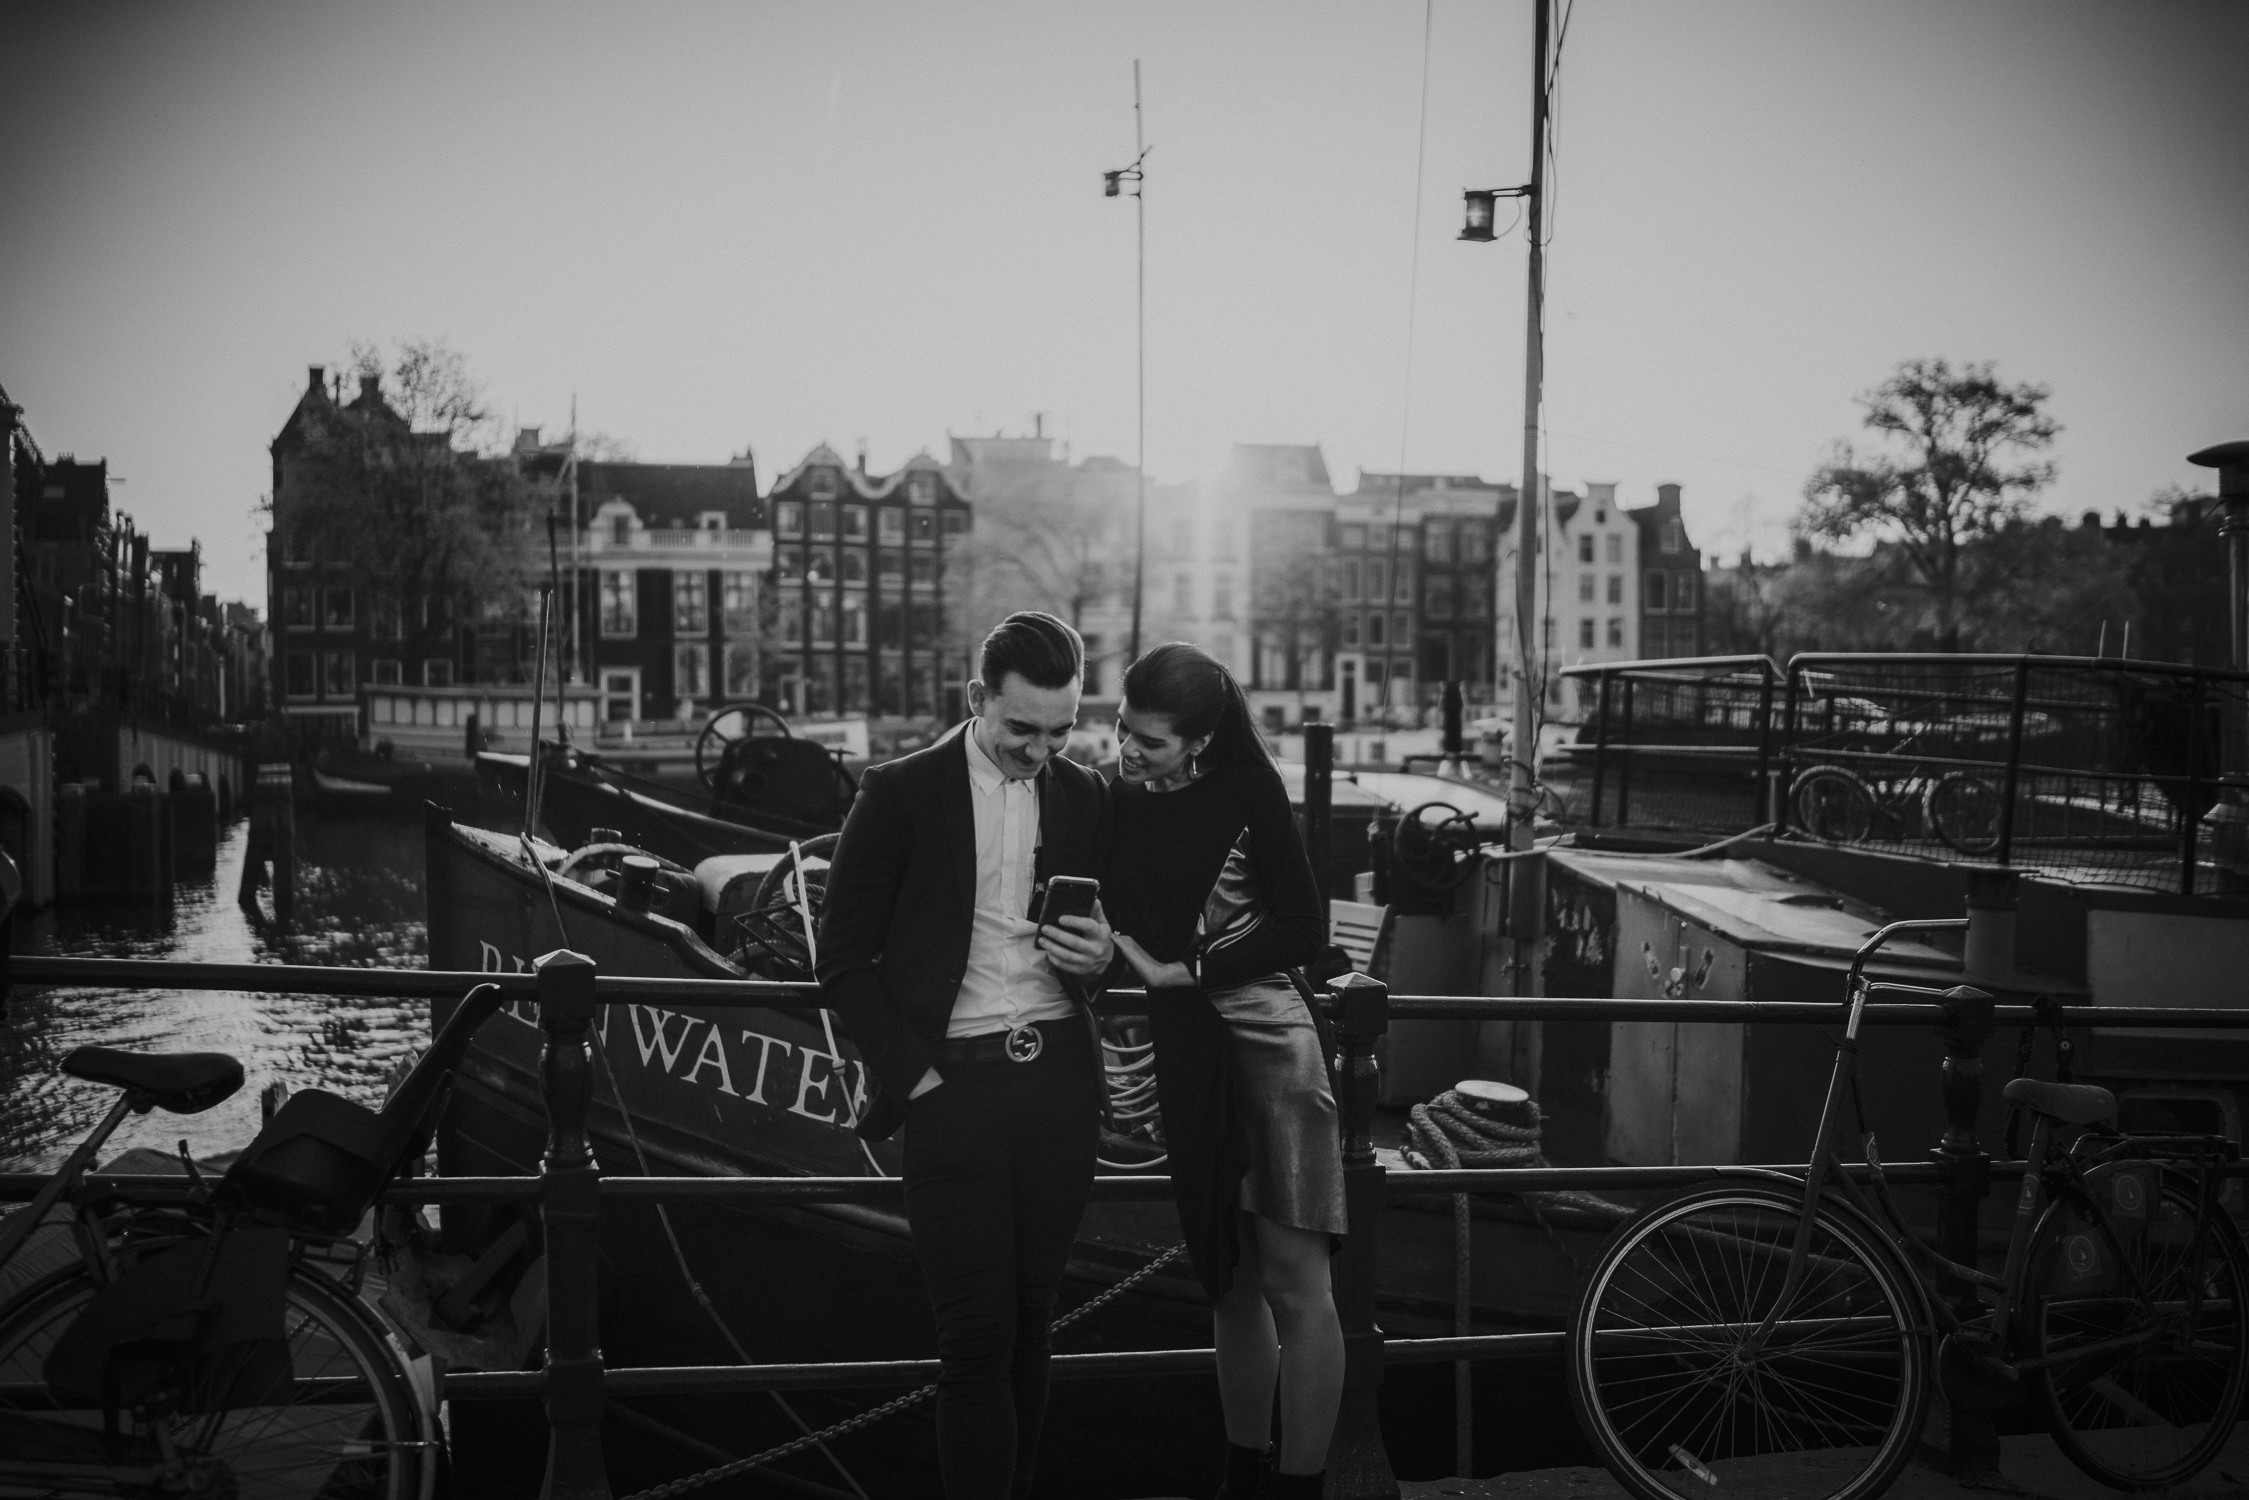 het beste bruidsfotografie amsterdam utrecht rotterdam en den haag door mark hadden uit amsterdam